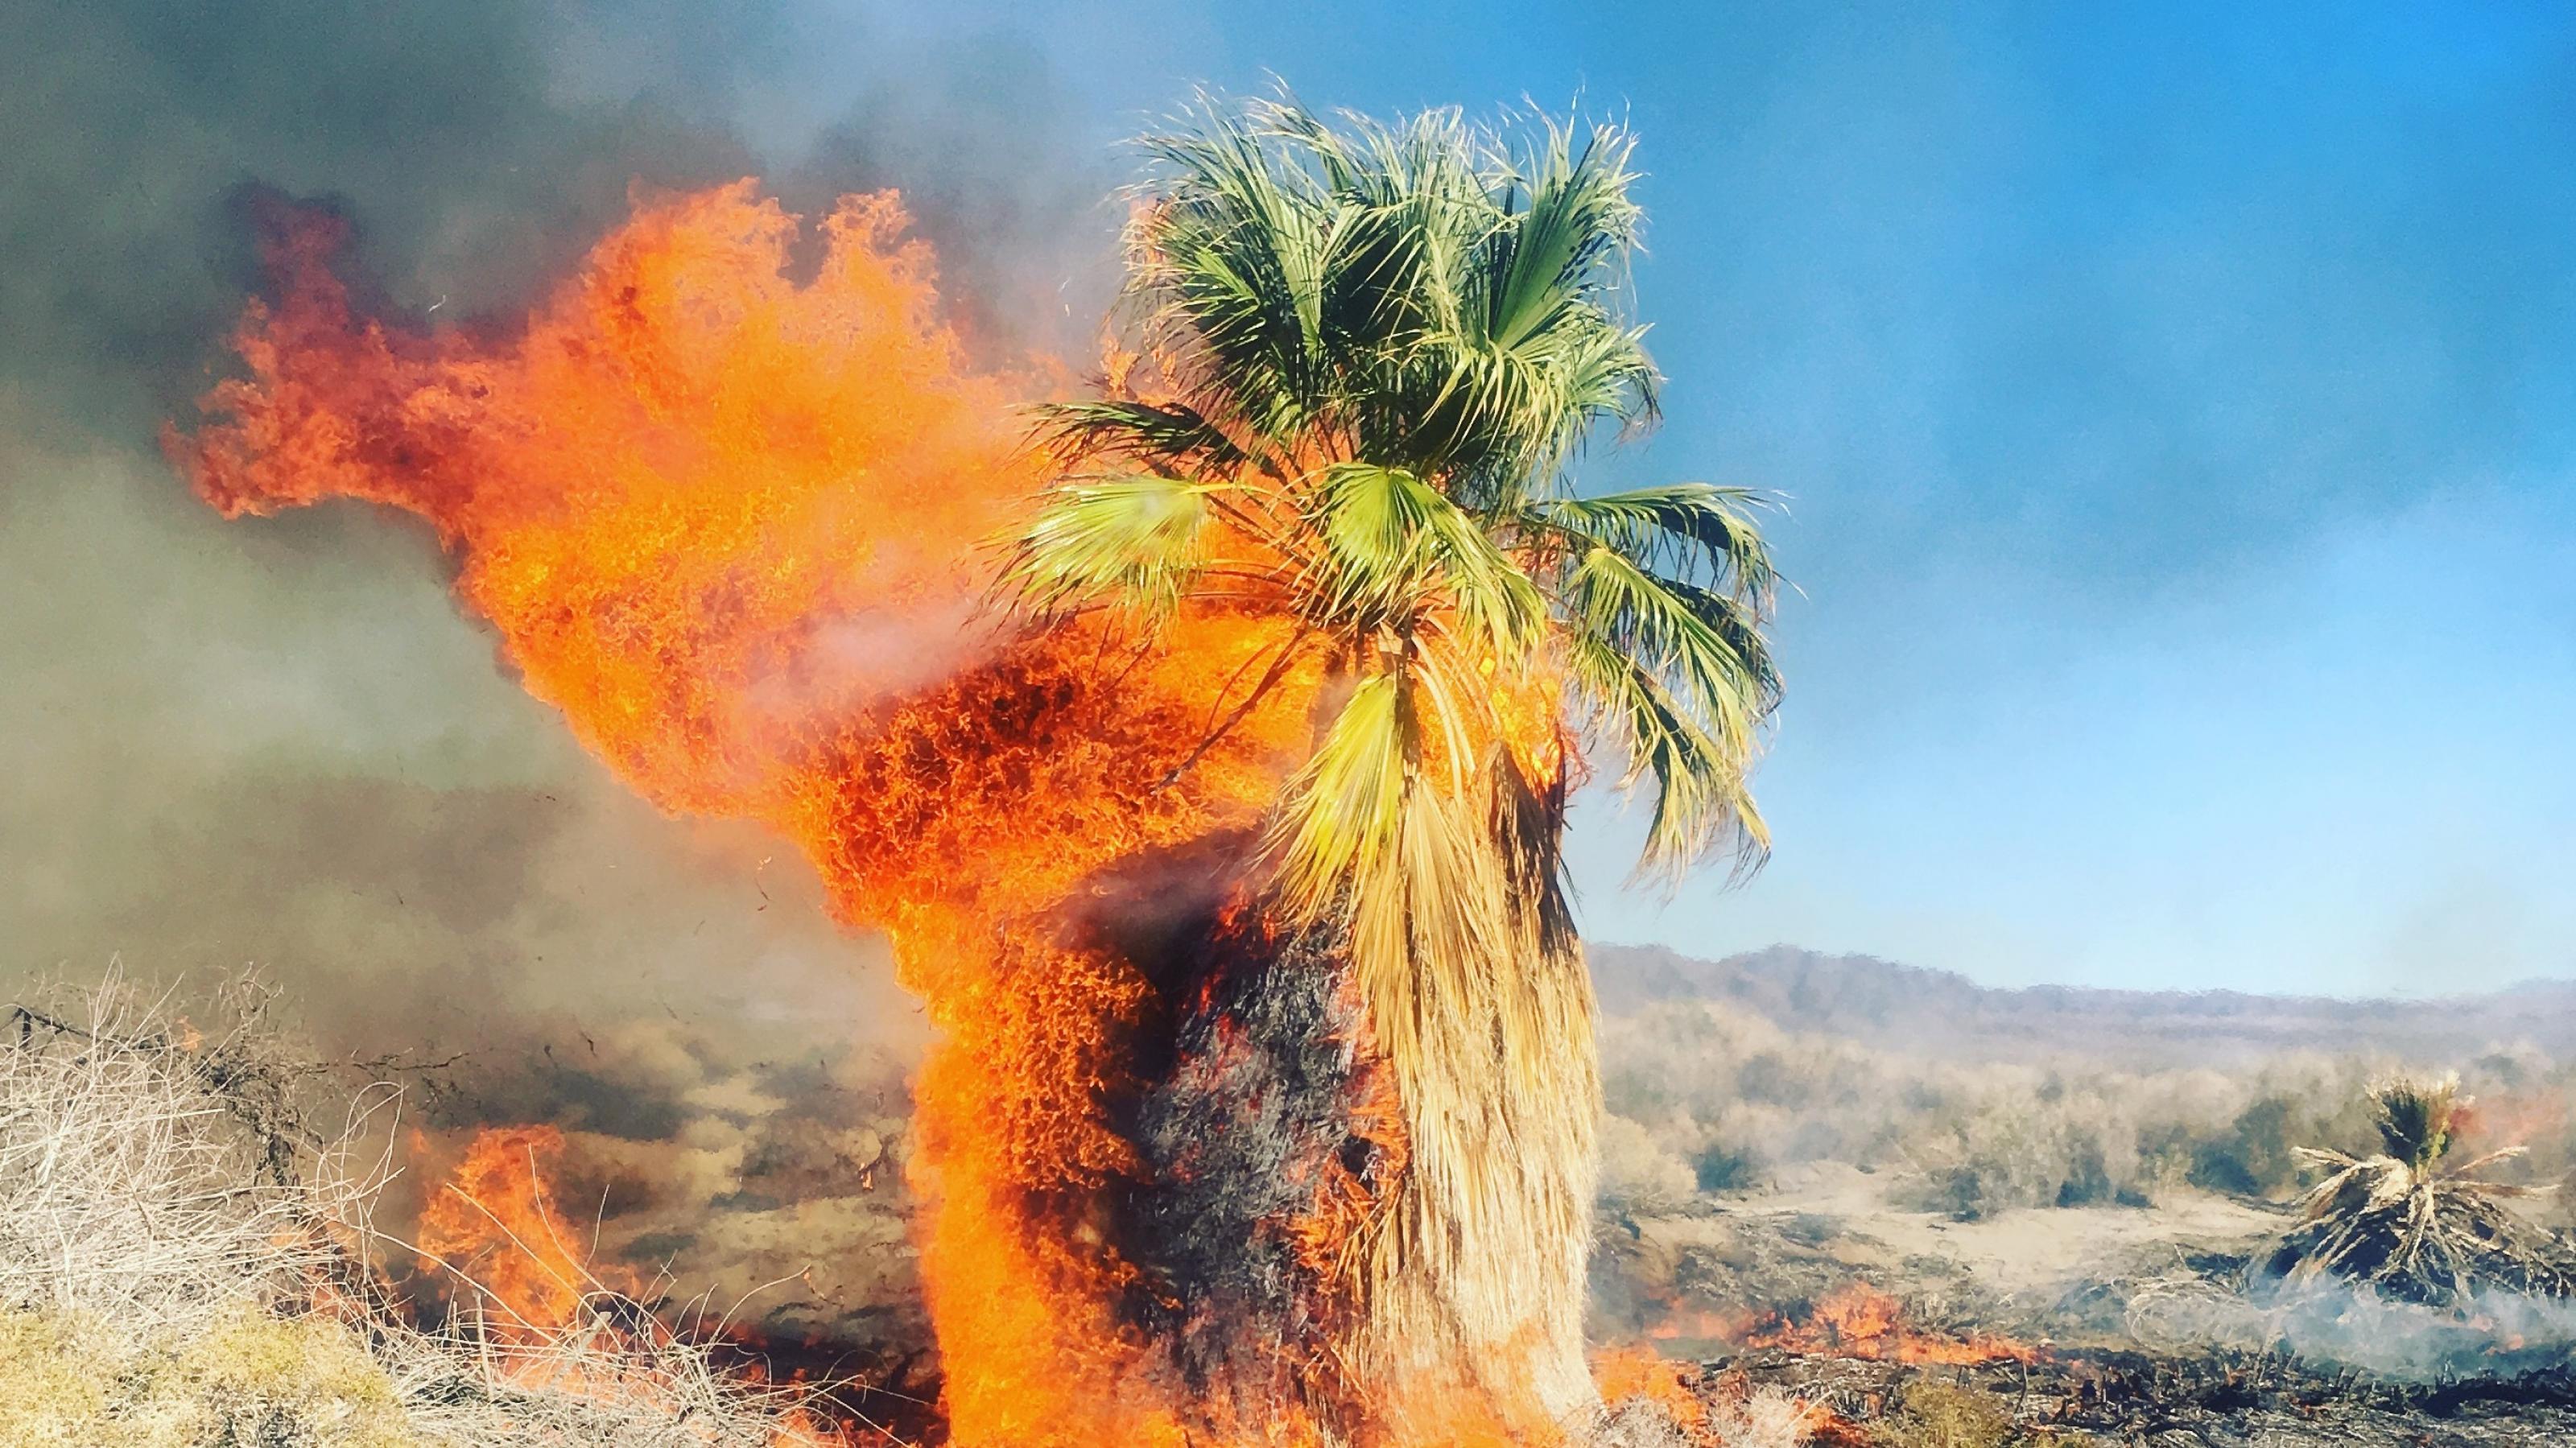 Brennende Palme bei einem Buschbrand im Schutzgebiet Dos Palmas in der Nähe von Palm Springs, Kalifornien 2017. Am Stamm lodert das Feuer, die Flammen und der Rauch werden vom Wind nach links gedrückt. Oben sind noch grüne Palmwedel zu sehen. Der Baum steht in einer Steppenlandschaft. Solche Feuer werden durch die Dürre und damit durch den Klimawandel begünstigt und verschärft, auch wenn die globale Erwärmung nicht die einzige Ursache ist.